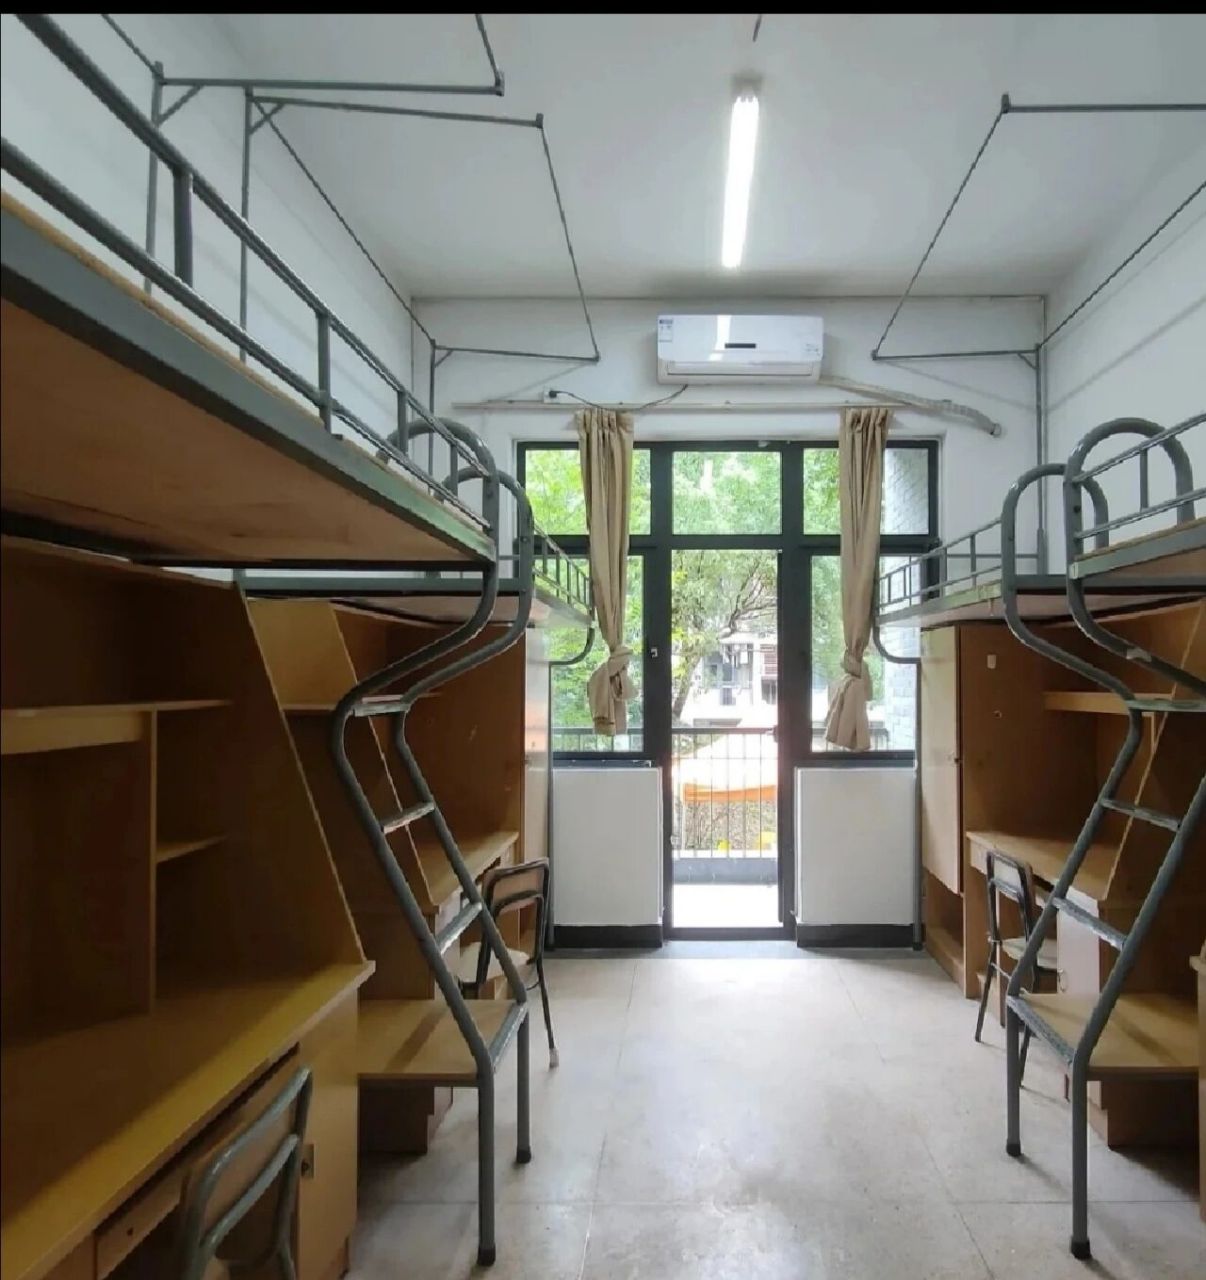 杭州科技职业技术学院寝室篇 寝室篇 寝室一共有四栋